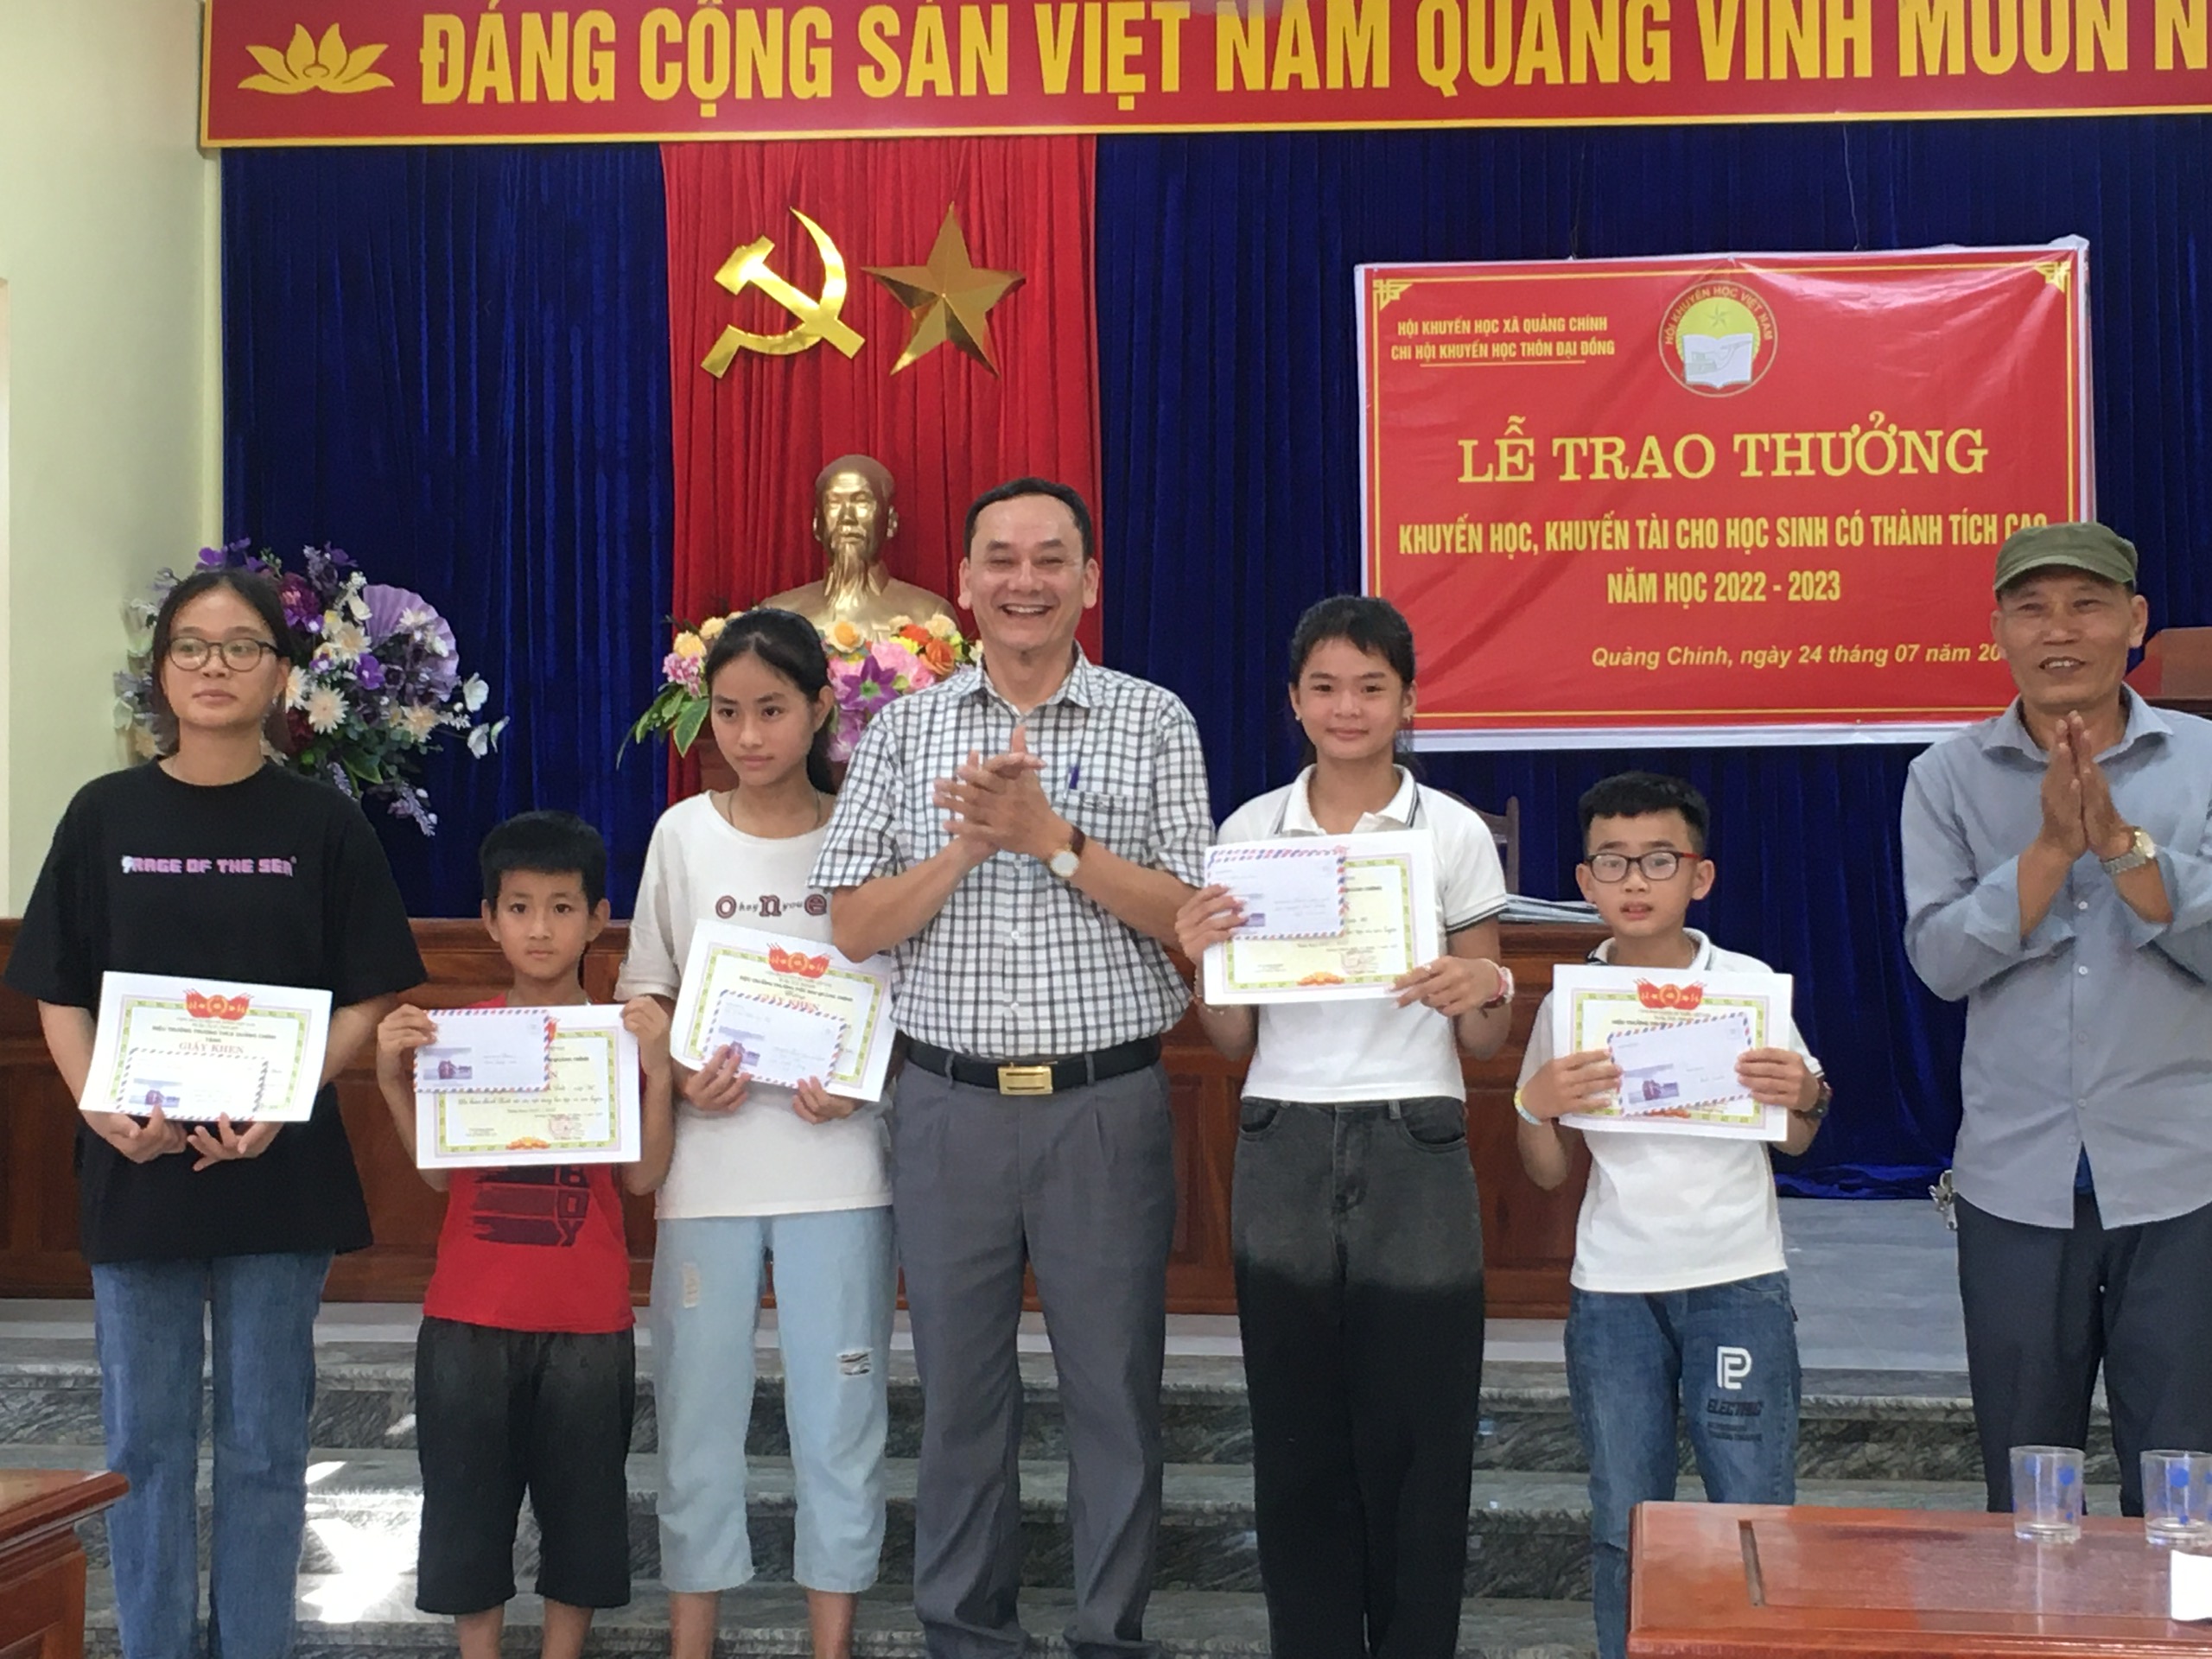 Hội khuyến học xã Quảng Chính trao quà khuyến học, khuyến tài cho học sinh thôn Đại Đồng có thành tích xuất sắc năm học 2022 – 2023!